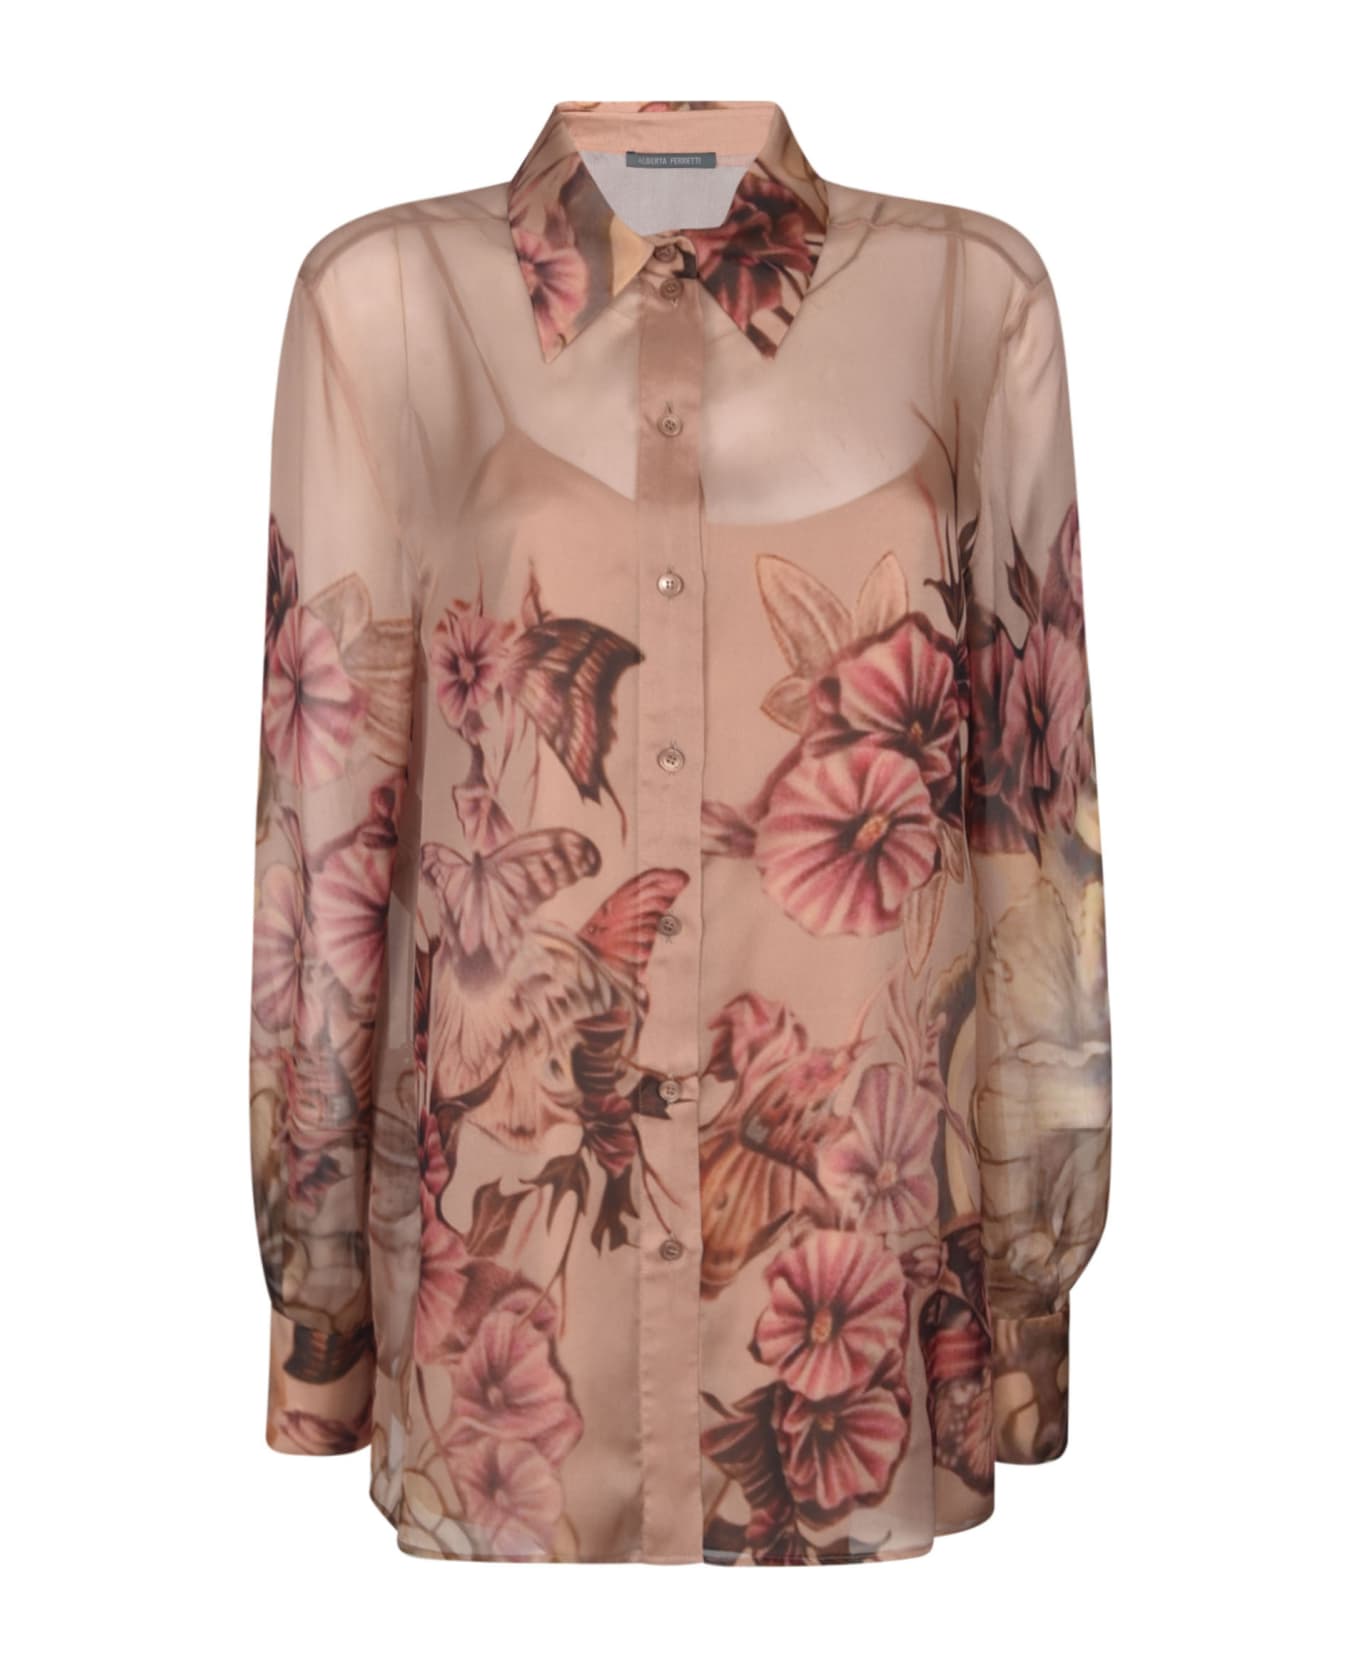 Alberta Ferretti Floral Print Shirt - Rosa